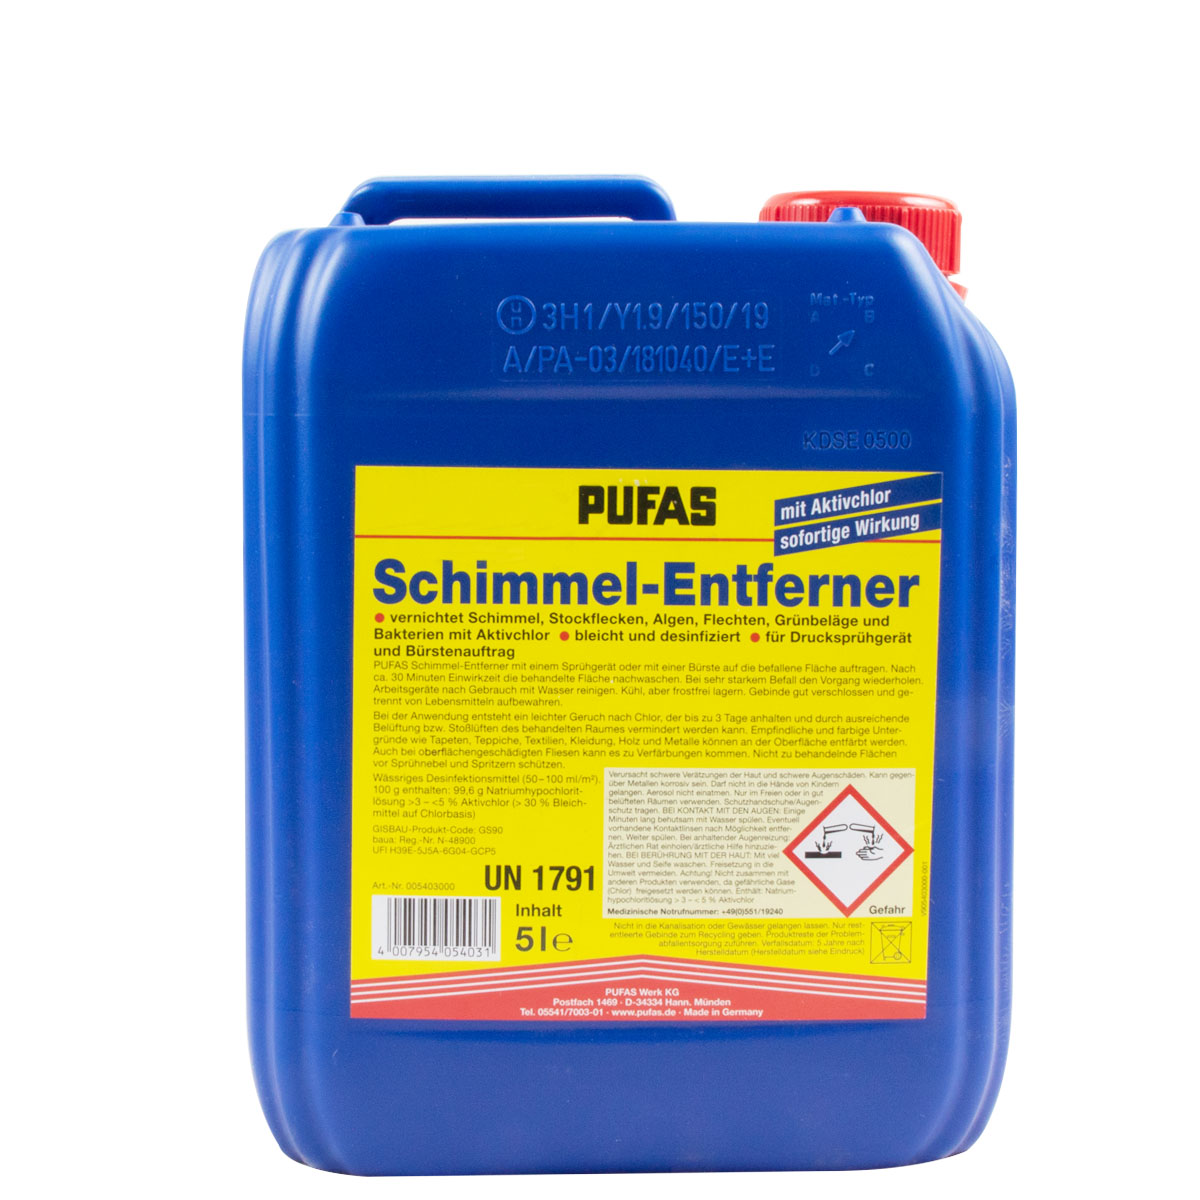 Pufas Schimmel-Entferner 5L, Schimmelentferner mit Aktivchlor, Schimmelex